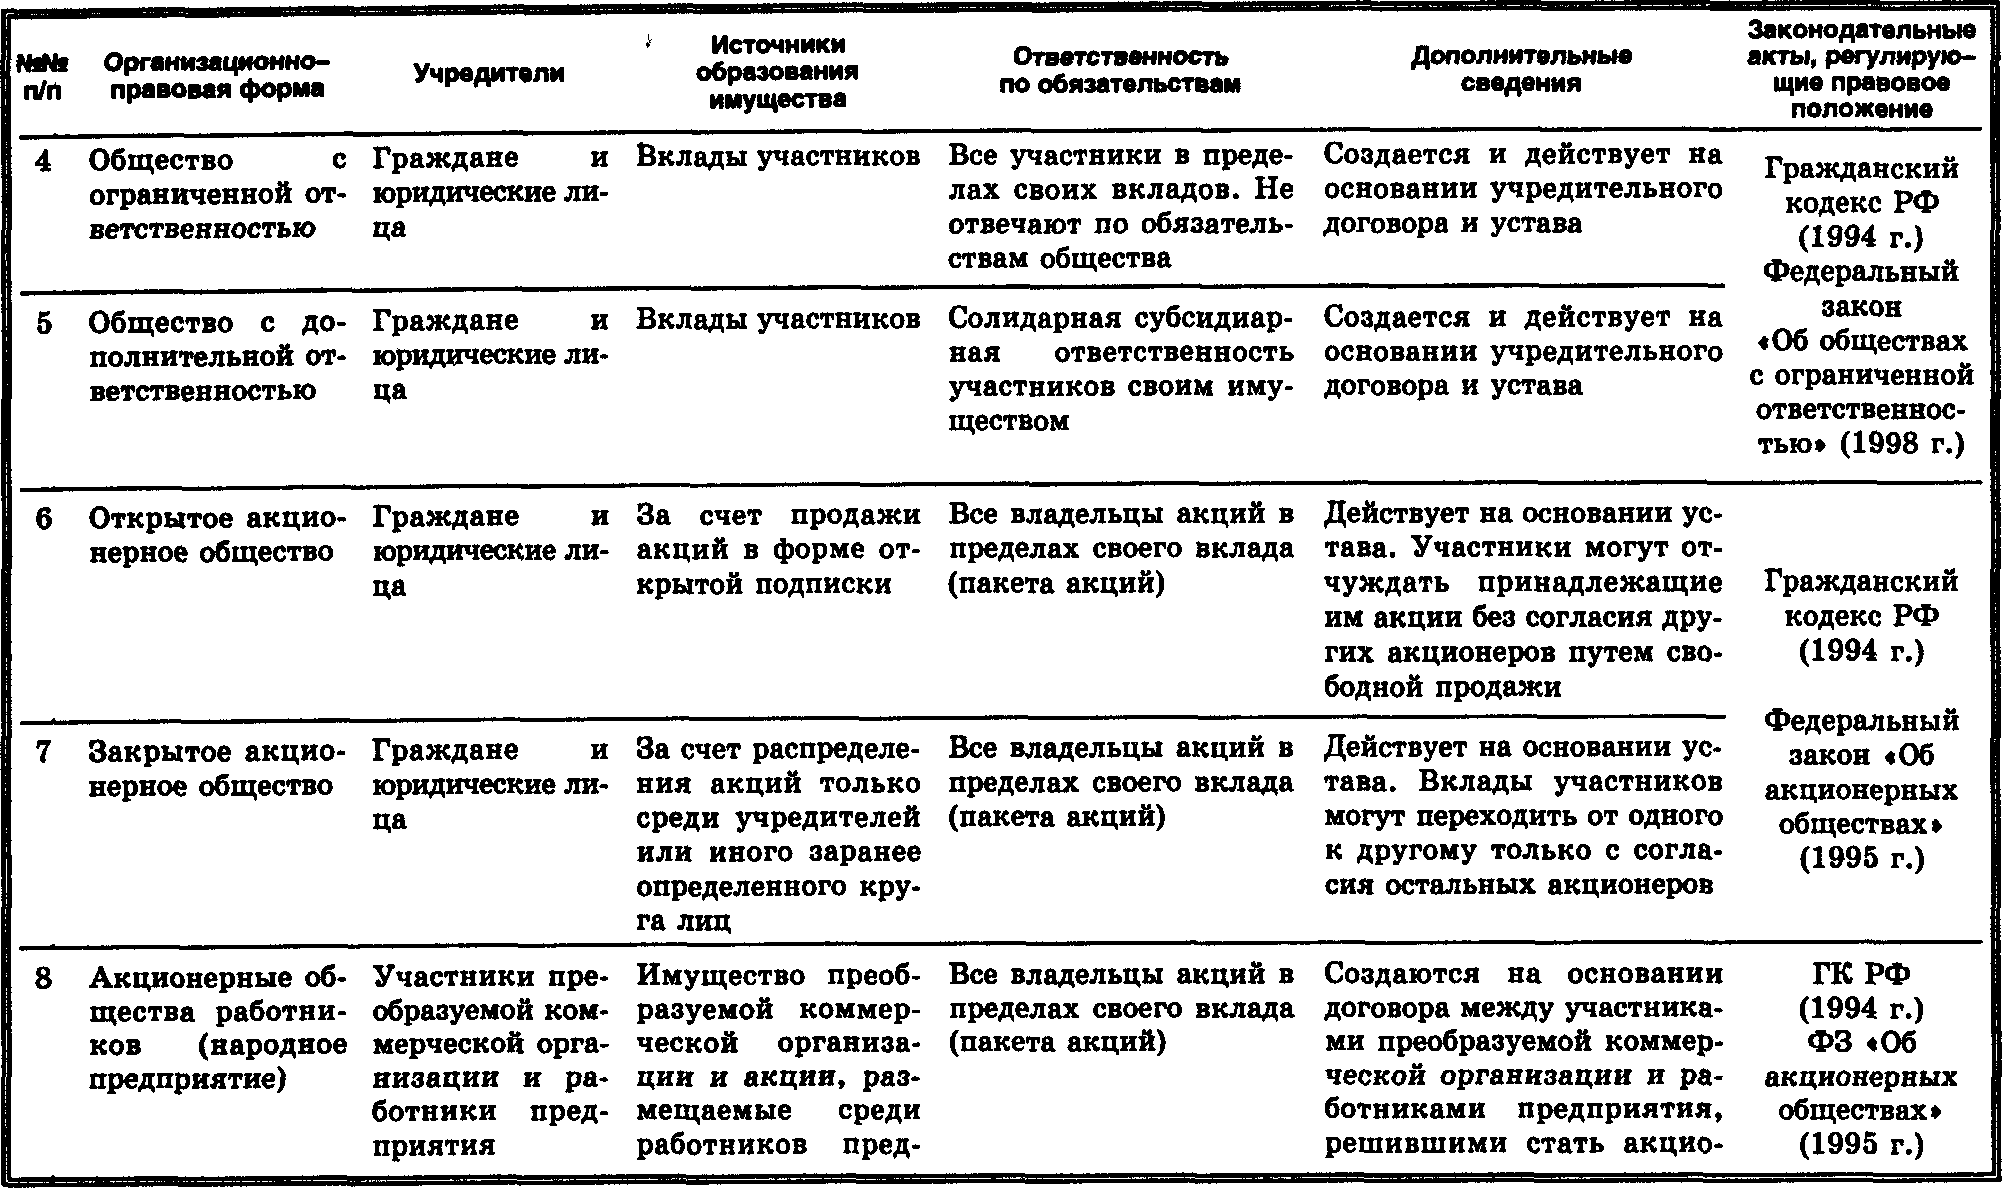 Организационно-правовые формы предприятий таблица